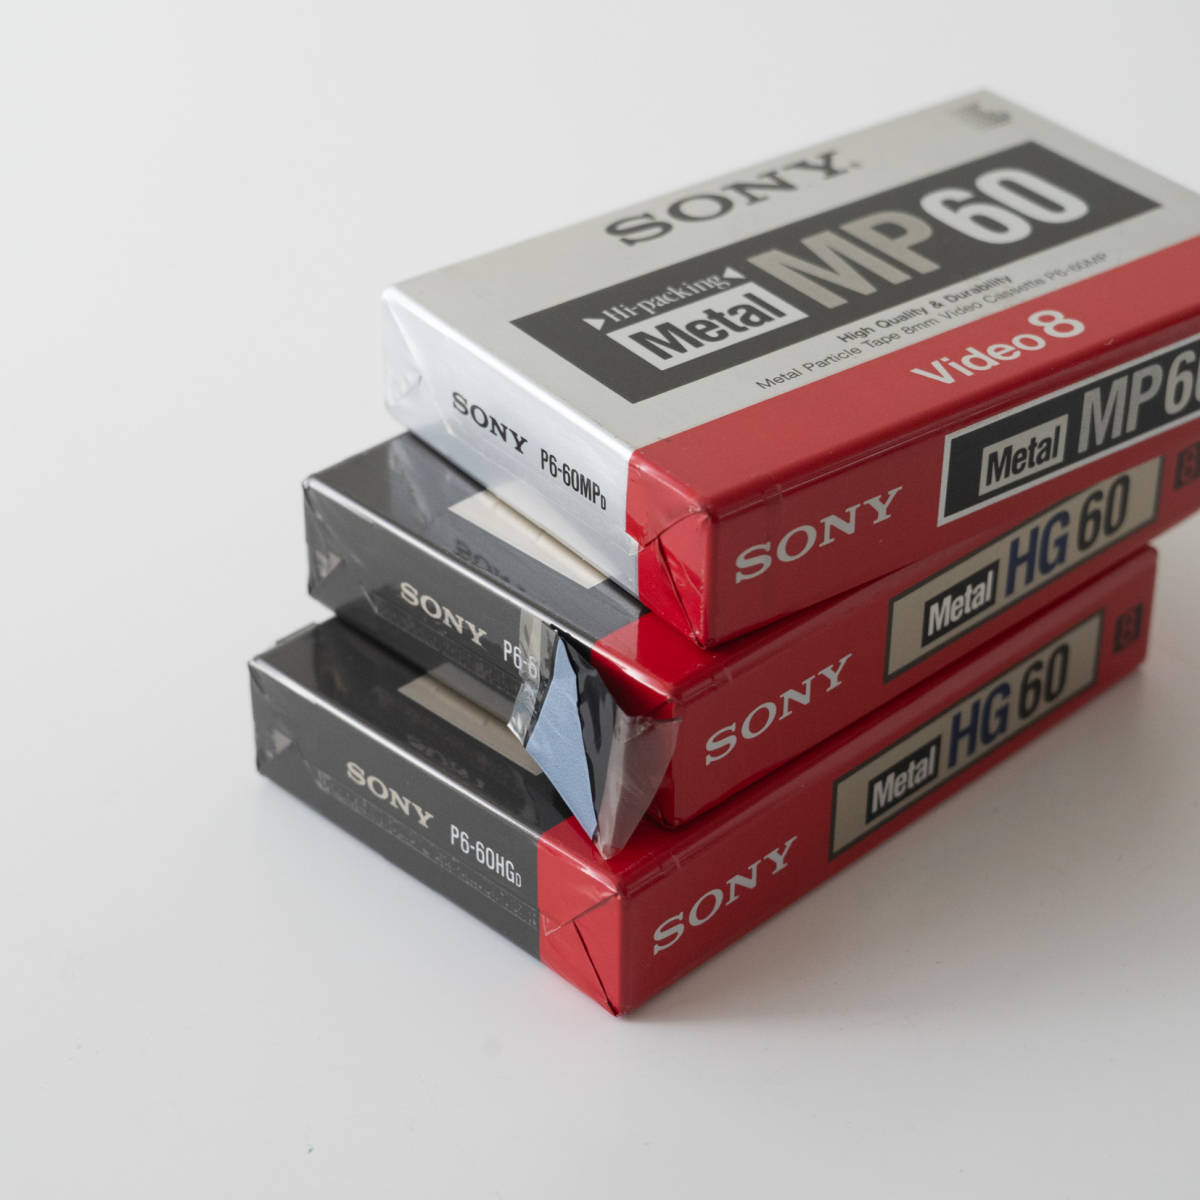 8ミリ Video8 ビデオカセットテープ メタル Metal HG 60 MP60 ソニー SONY ３本まとめて P6-60HG P6-60MP _画像4